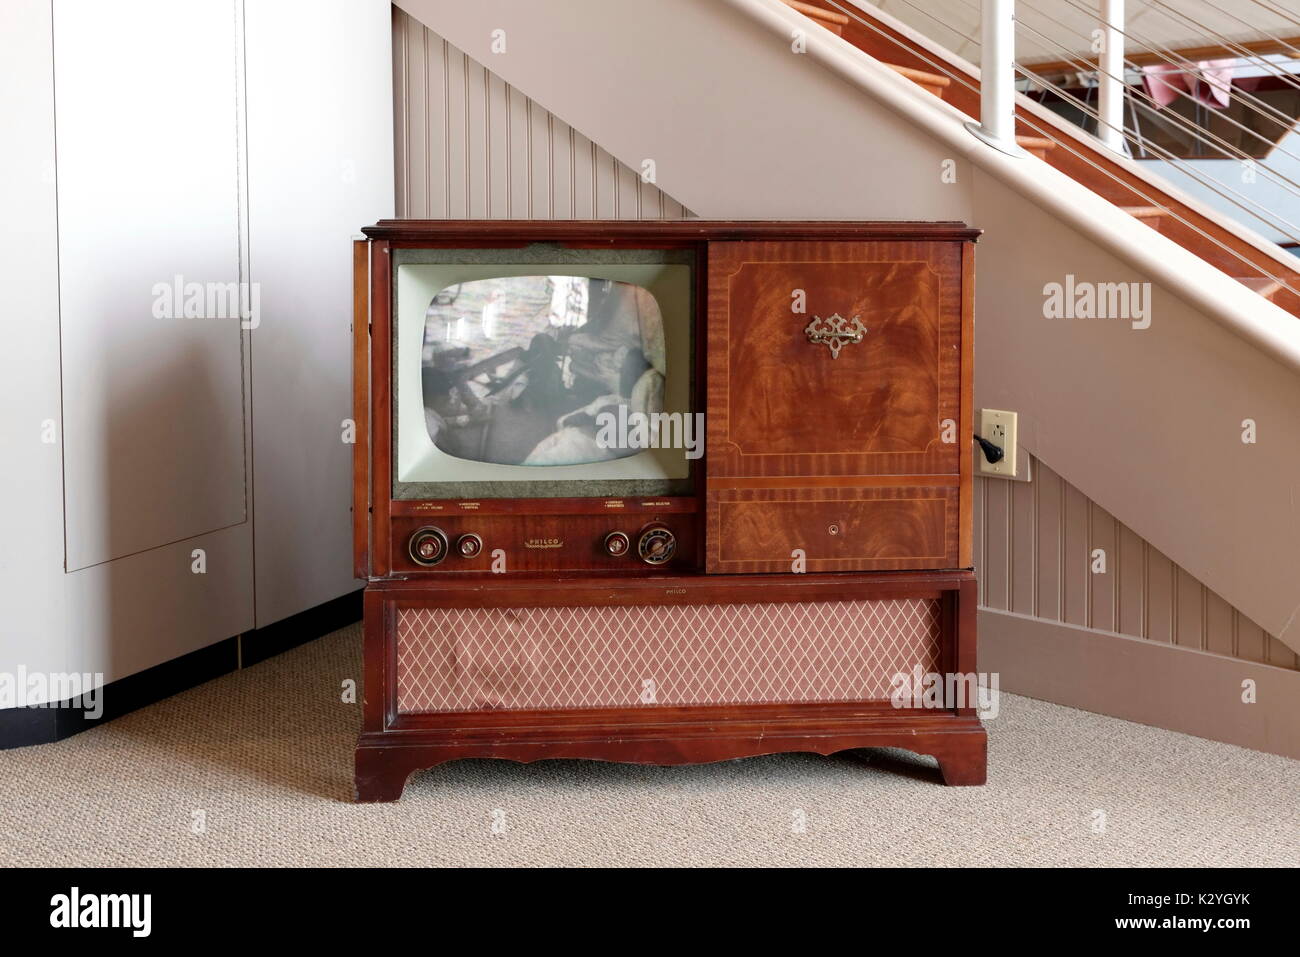 Télévision Philco antique avec console en bois. Banque D'Images